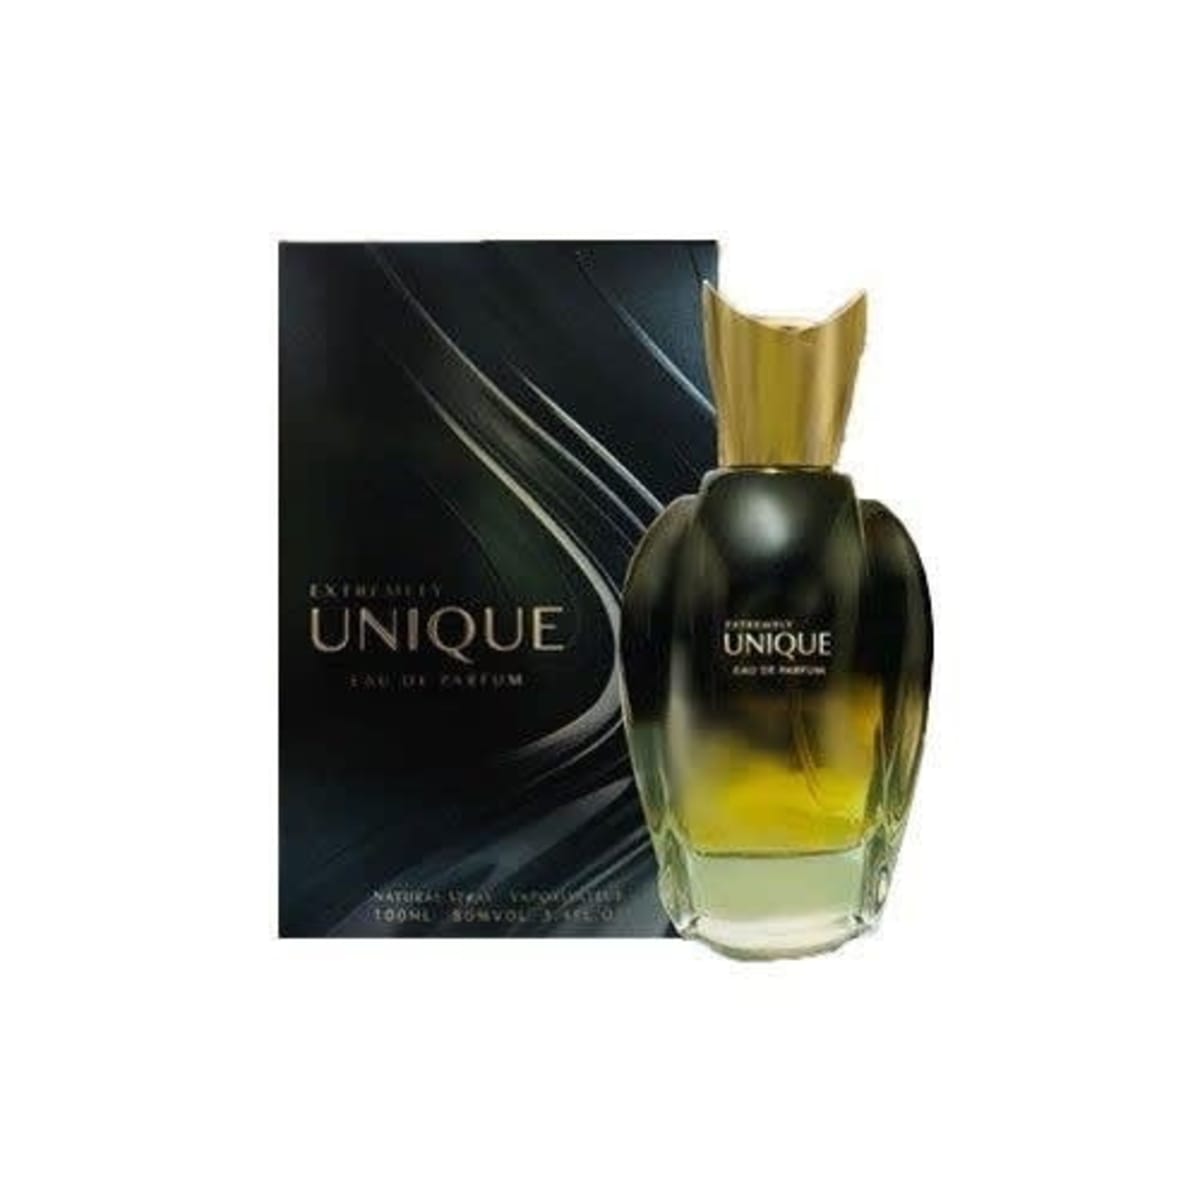 Unique parfum. Unique extremely духи женские. Unique духи мужские. Unique Luxury Perfume мужские. Luxury Parfum духи unique Perfume.